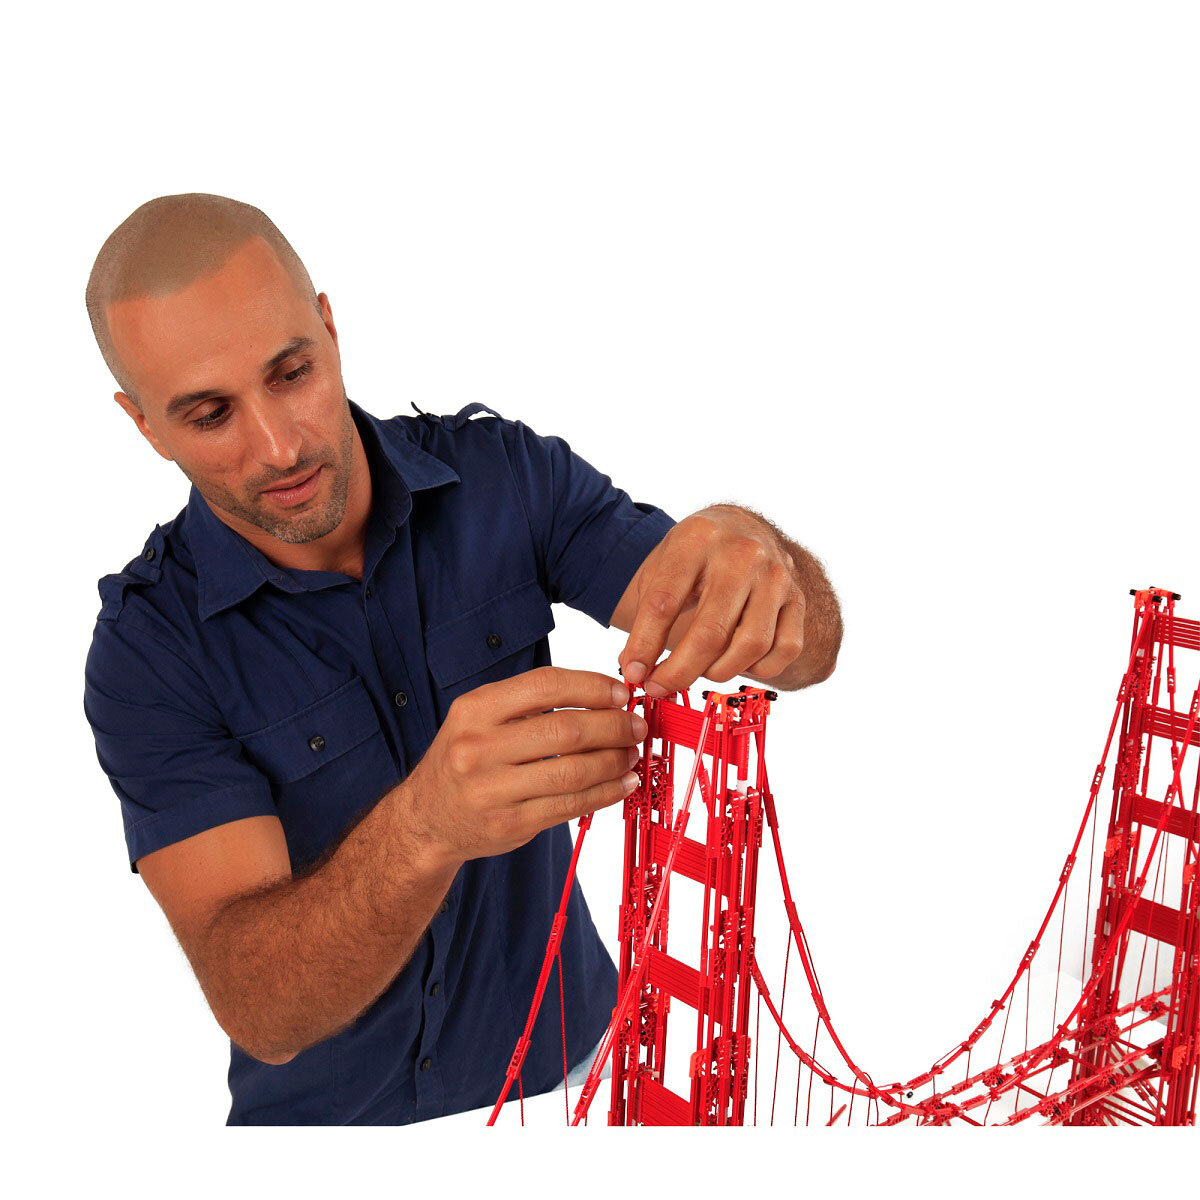 Buy K'nex Golden Gate Bridge Lifestyle Image at Costco.co.uk